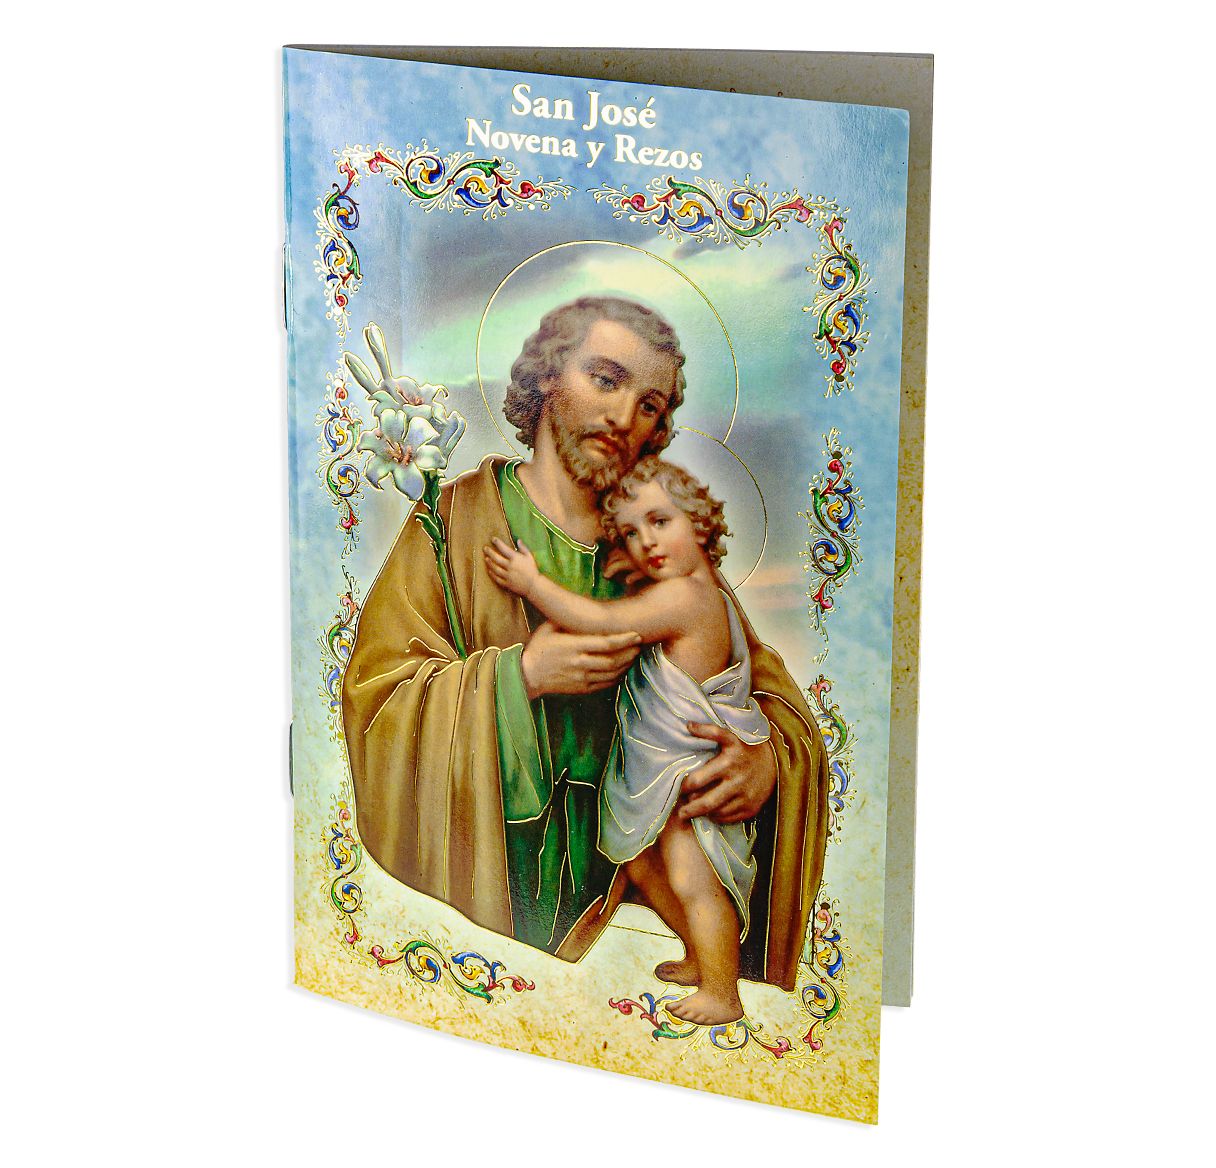 Saint Joseph Novena Book